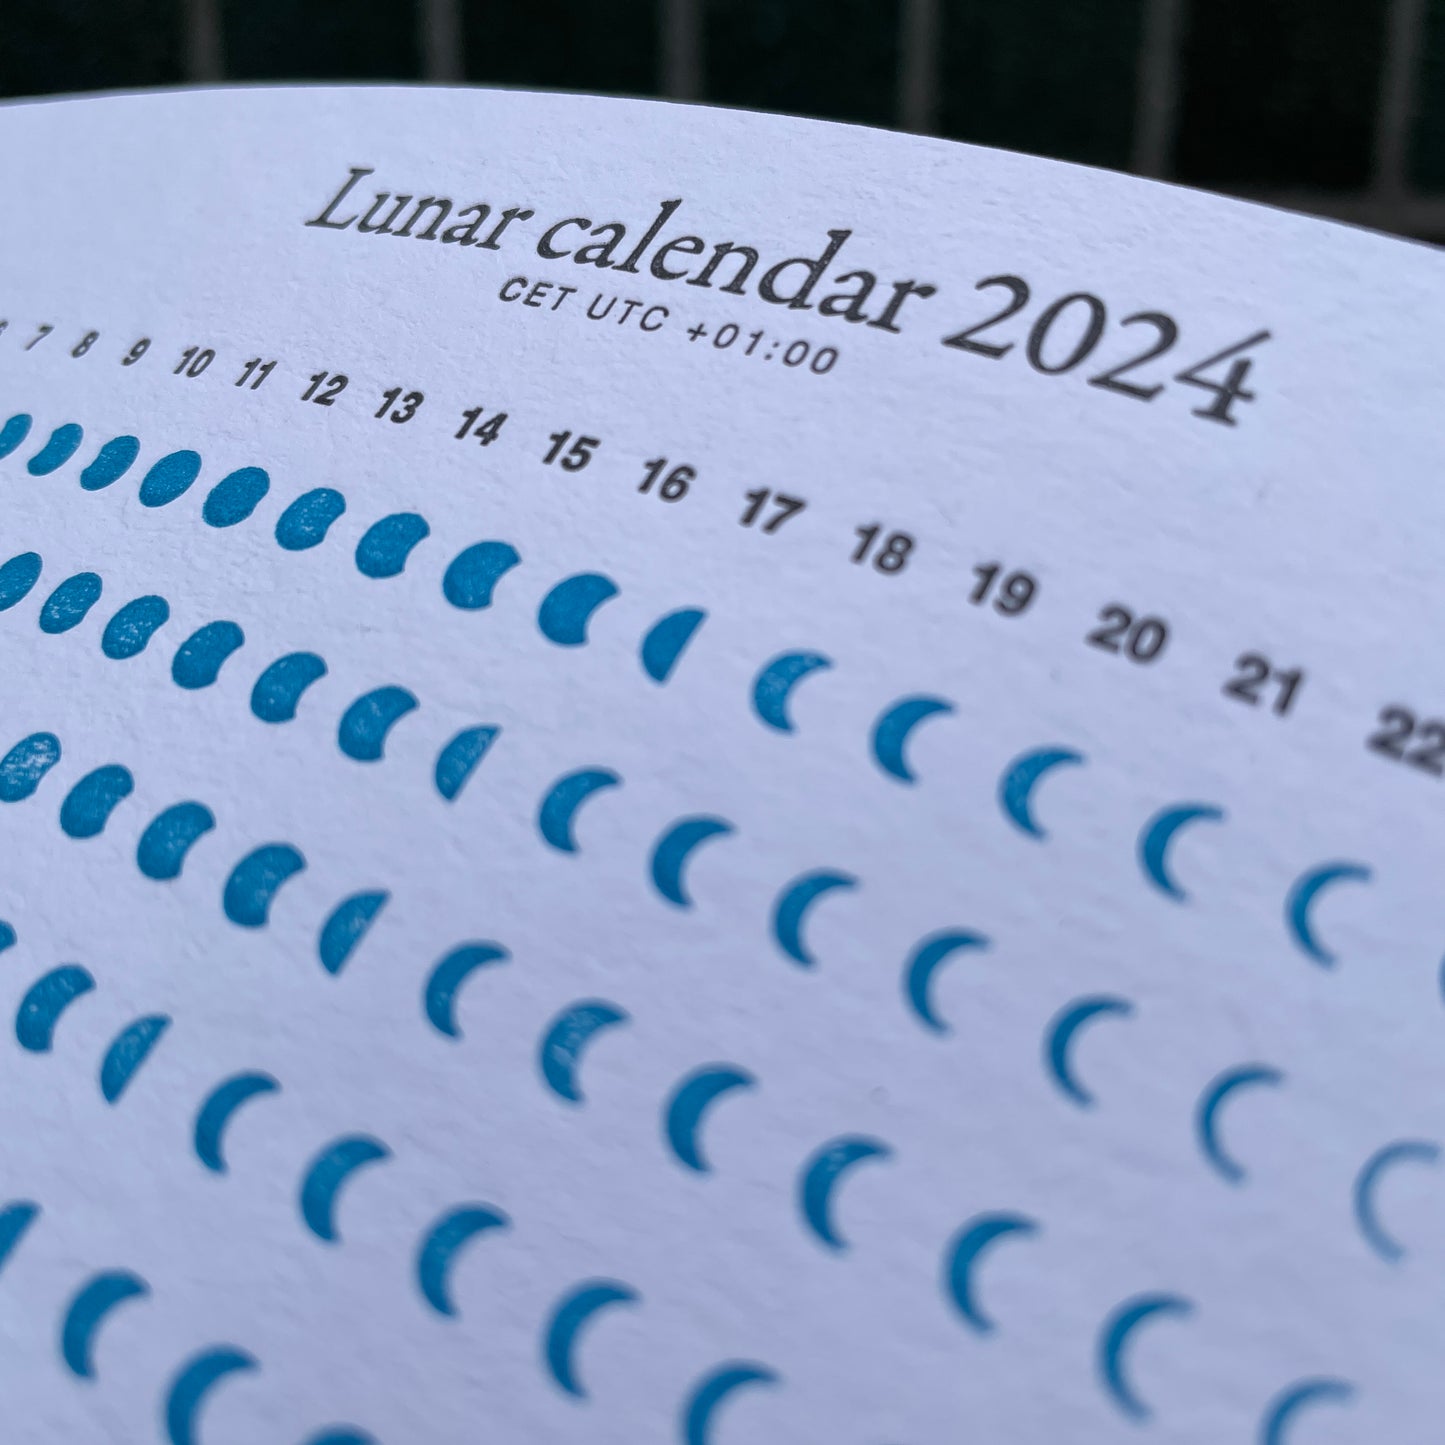 Lunar Calendar 2024